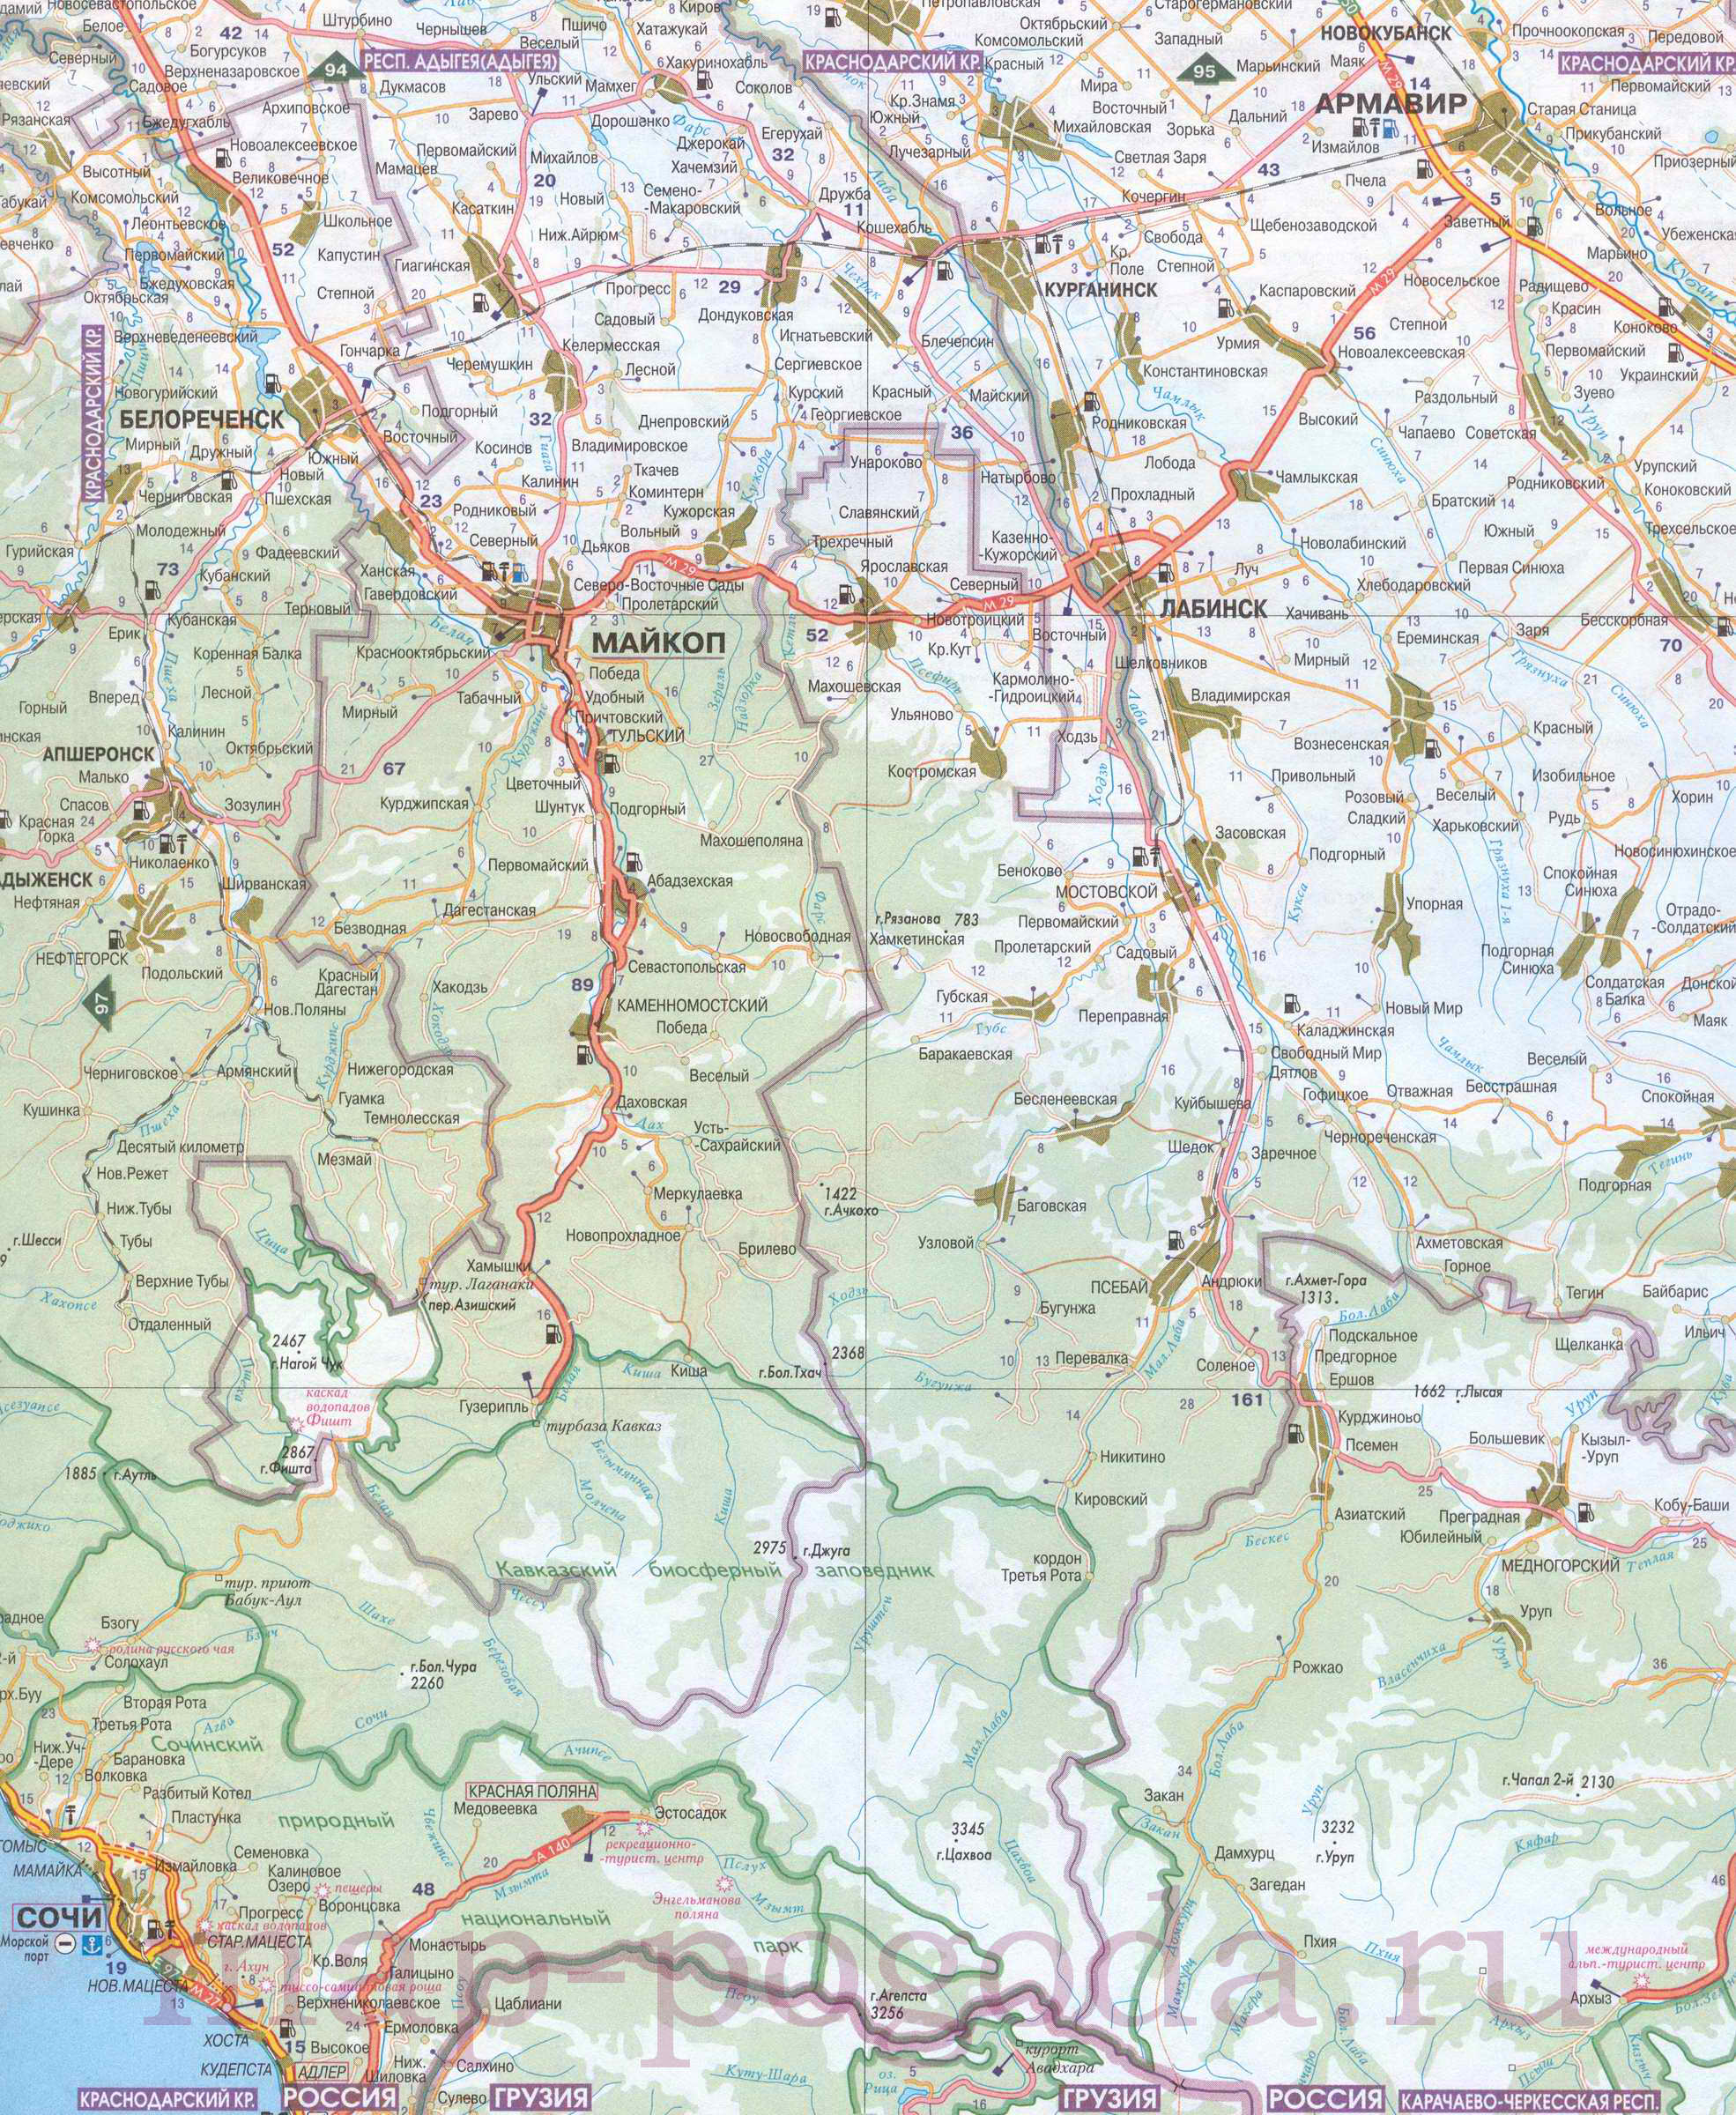 Подробная карта Черноморского побережья Краснодарского края. Автомобильная карта Краснодарского края, C0 - 